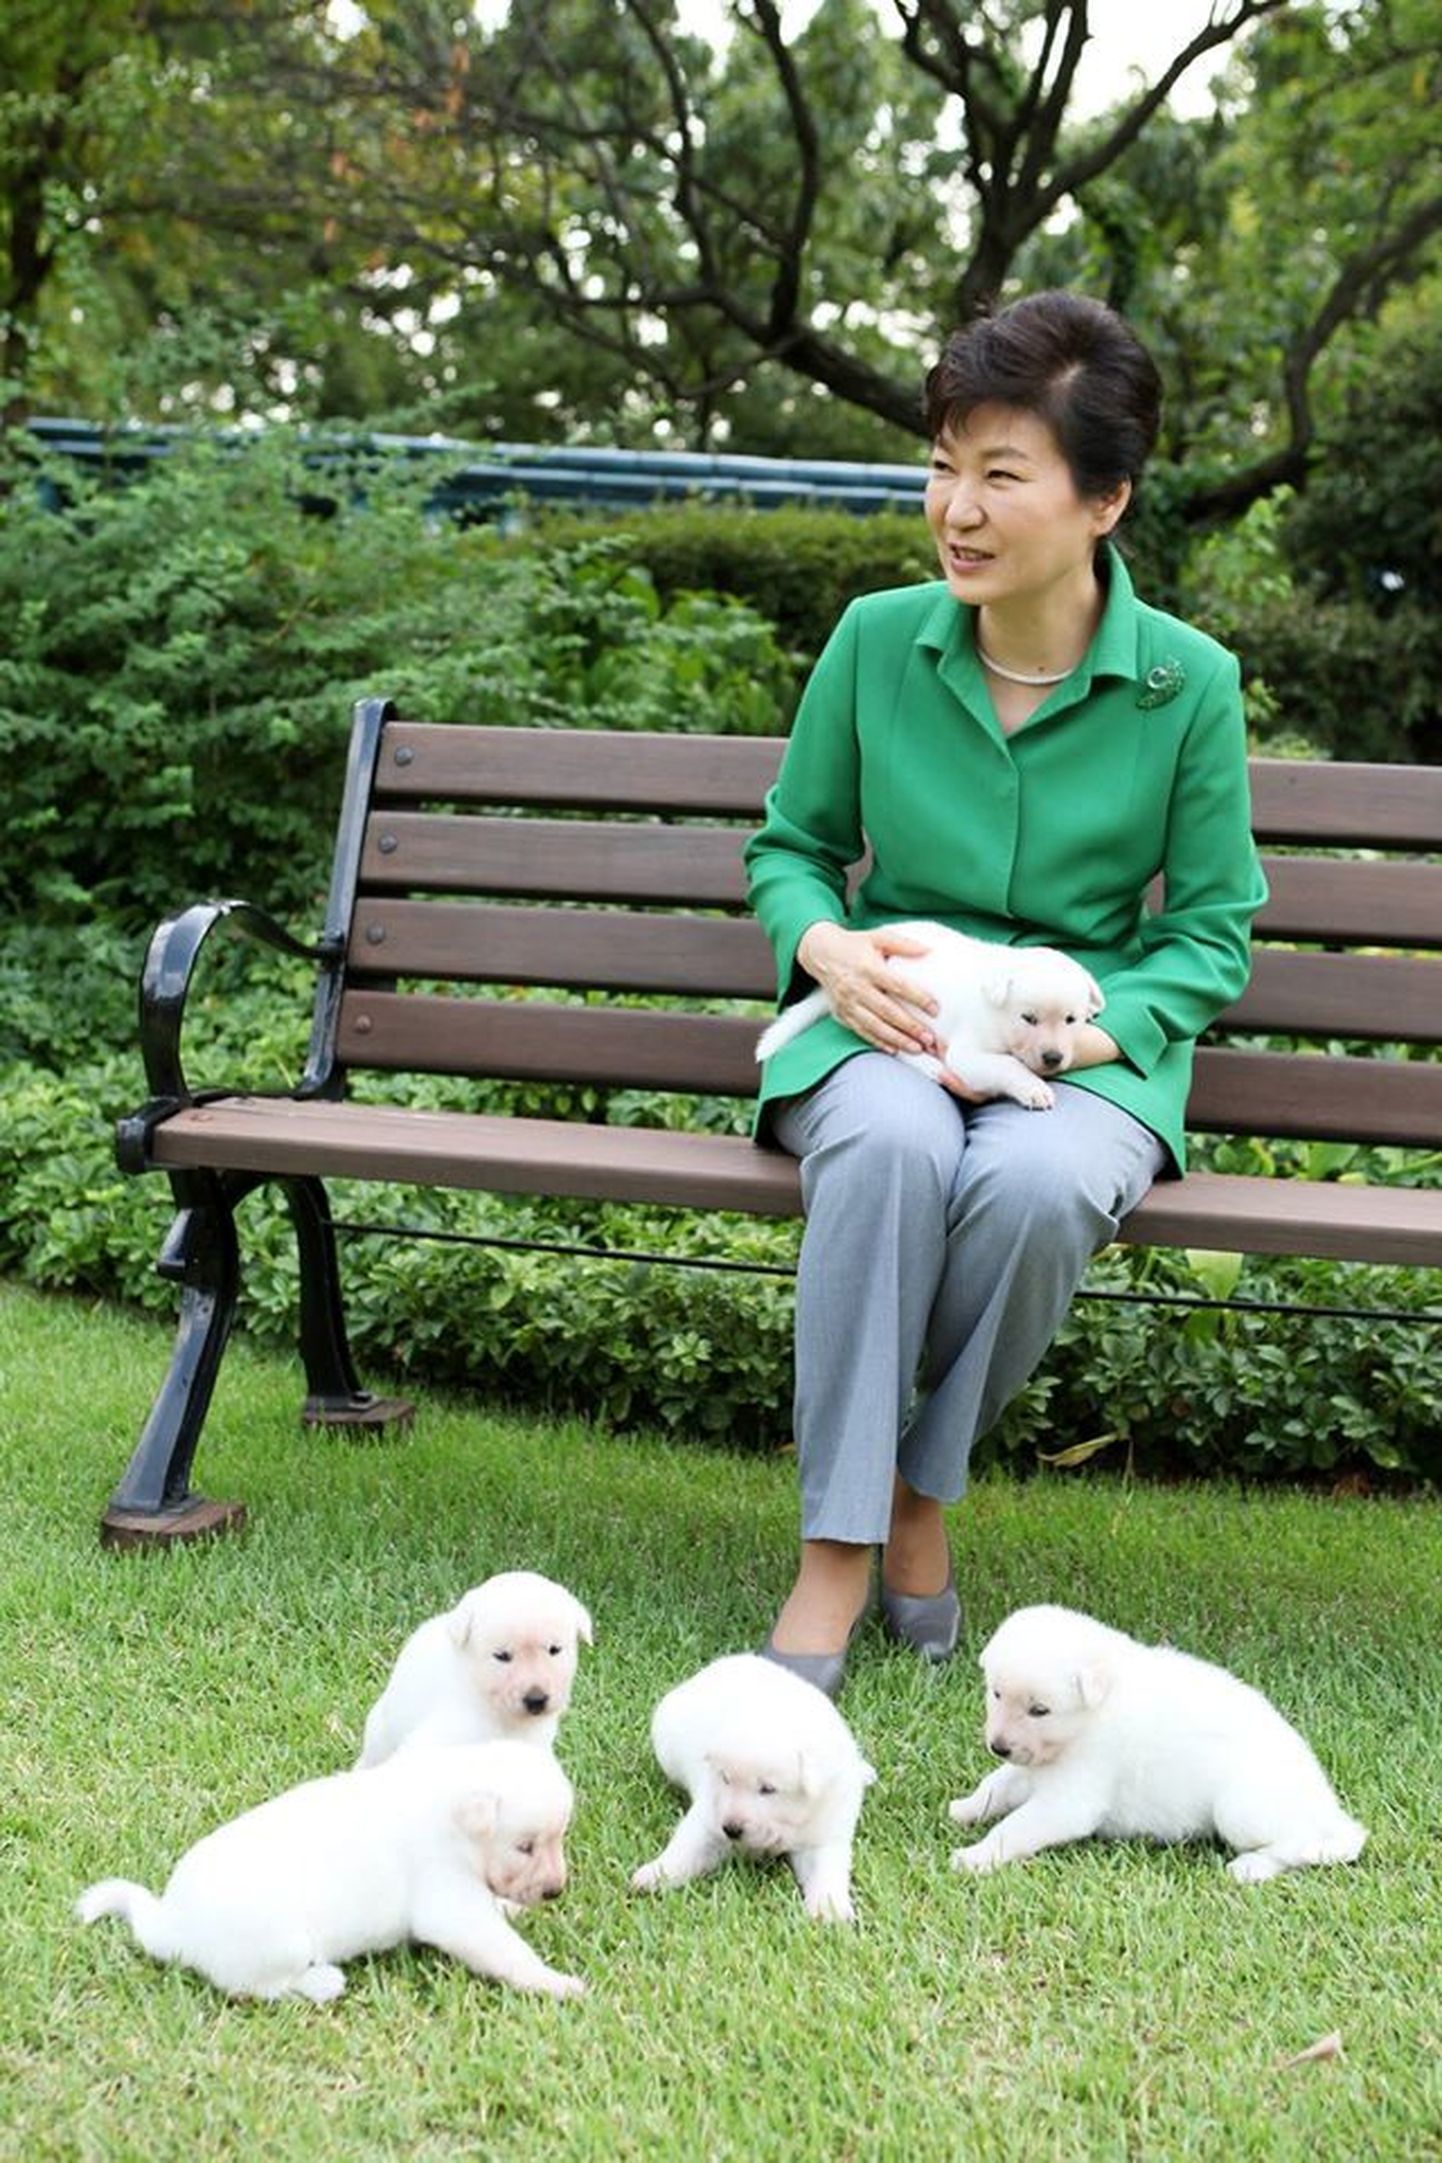 Lõuna-Korea tagandatud president Park Geun-hye peab prokuratuuris oma tegevusest aru andma.